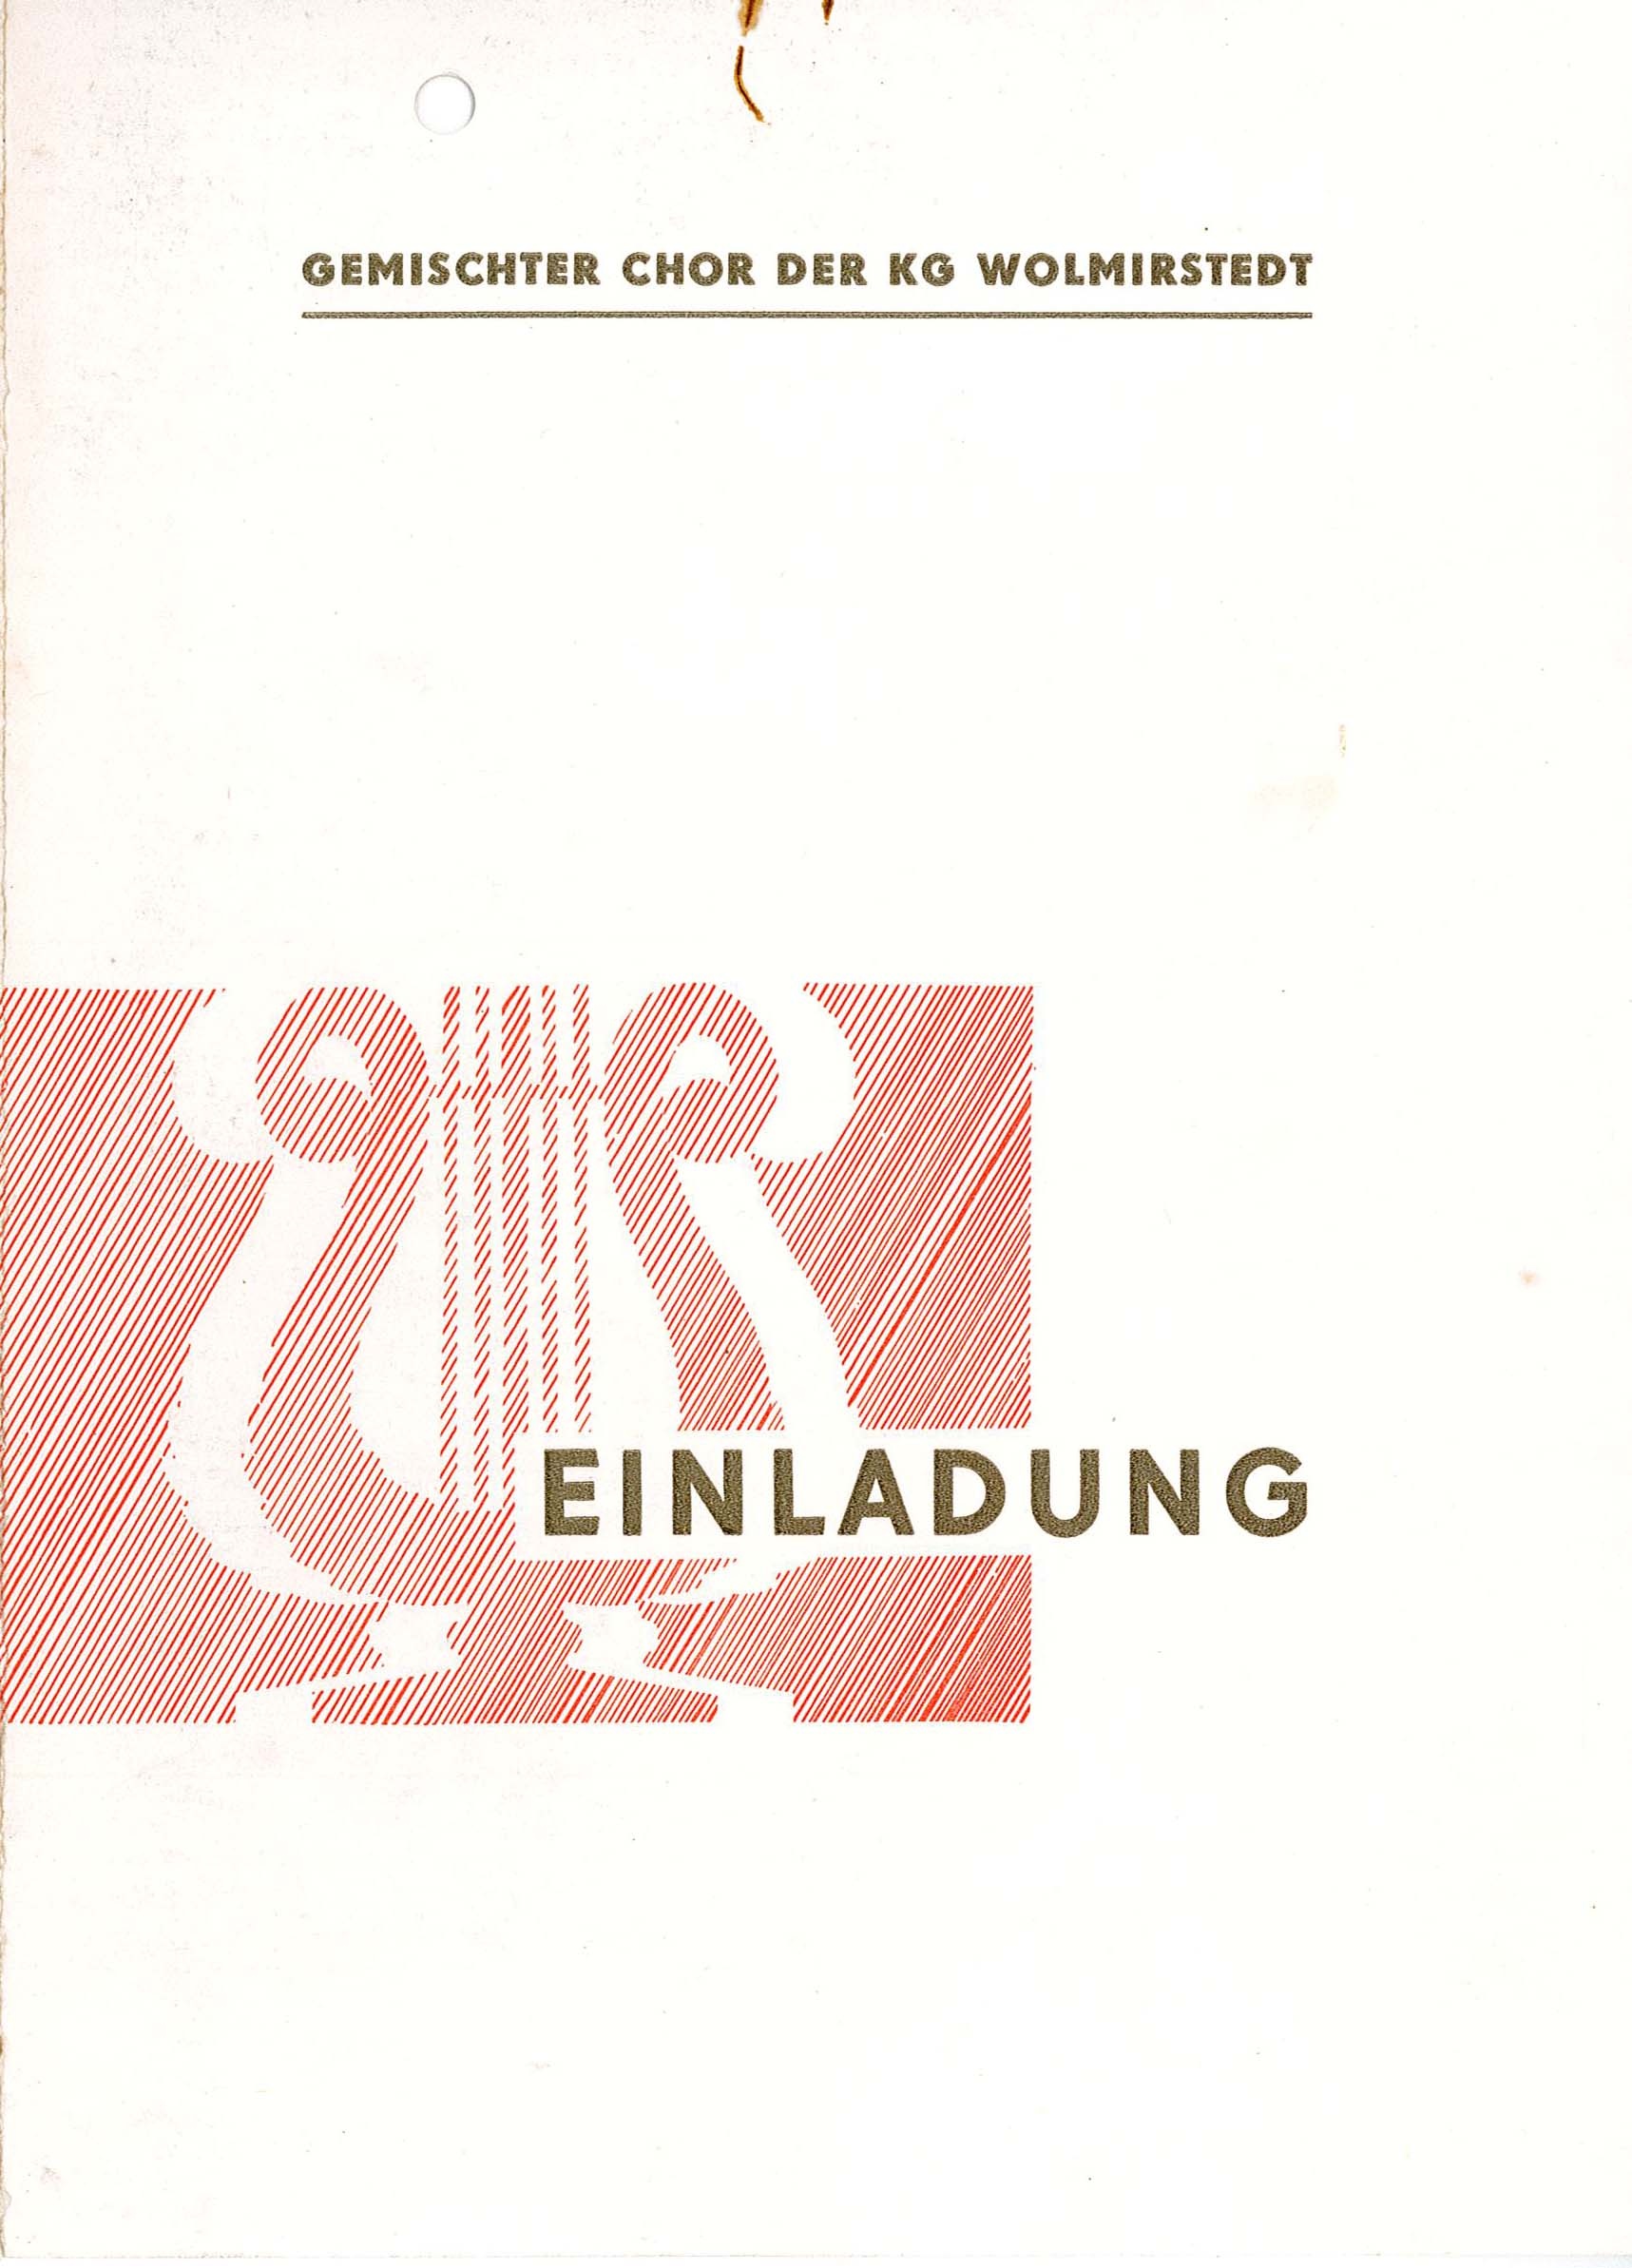 Einladung des Gemischten Chors der KG Wolmirstedt an den Männerchor Glindenberg für den 18.05.1975 (Museum Wolmirstedt RR-F)